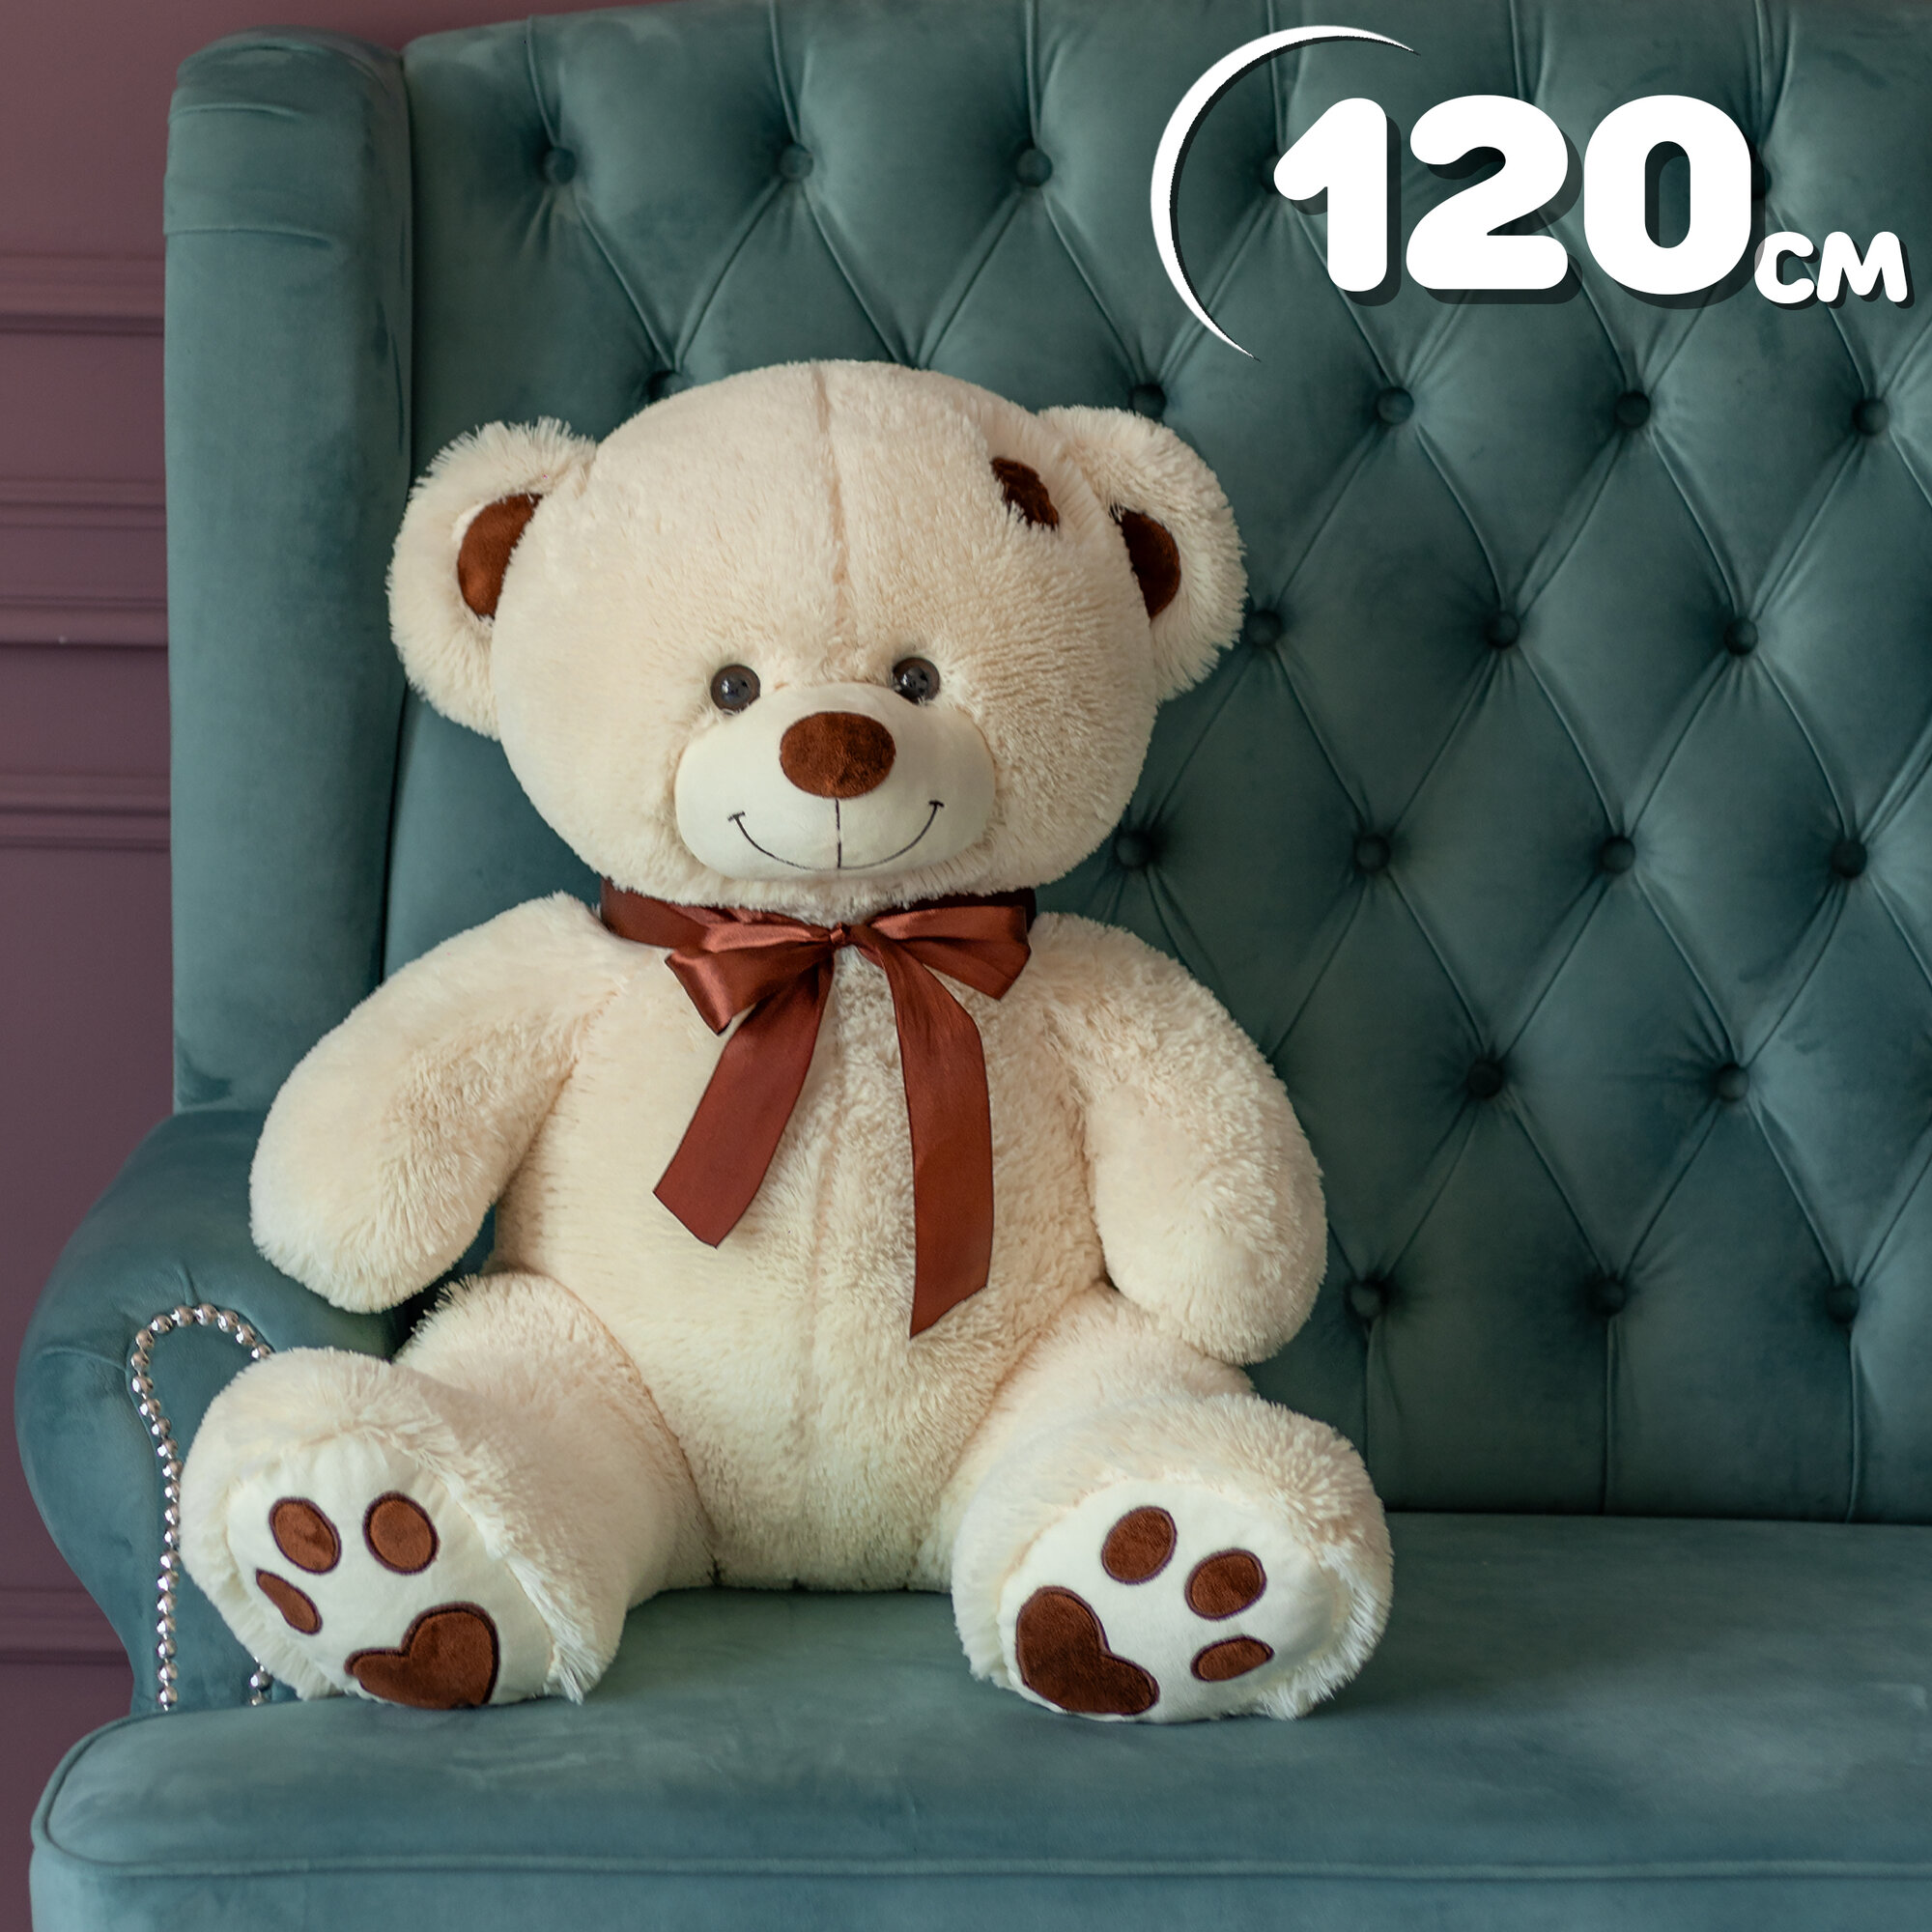 Мягкая игрушка большой плюшевый медведь Тони 120 см, плюшевый мишка, подарок девушке, ребенку на день рождение, цвет латте